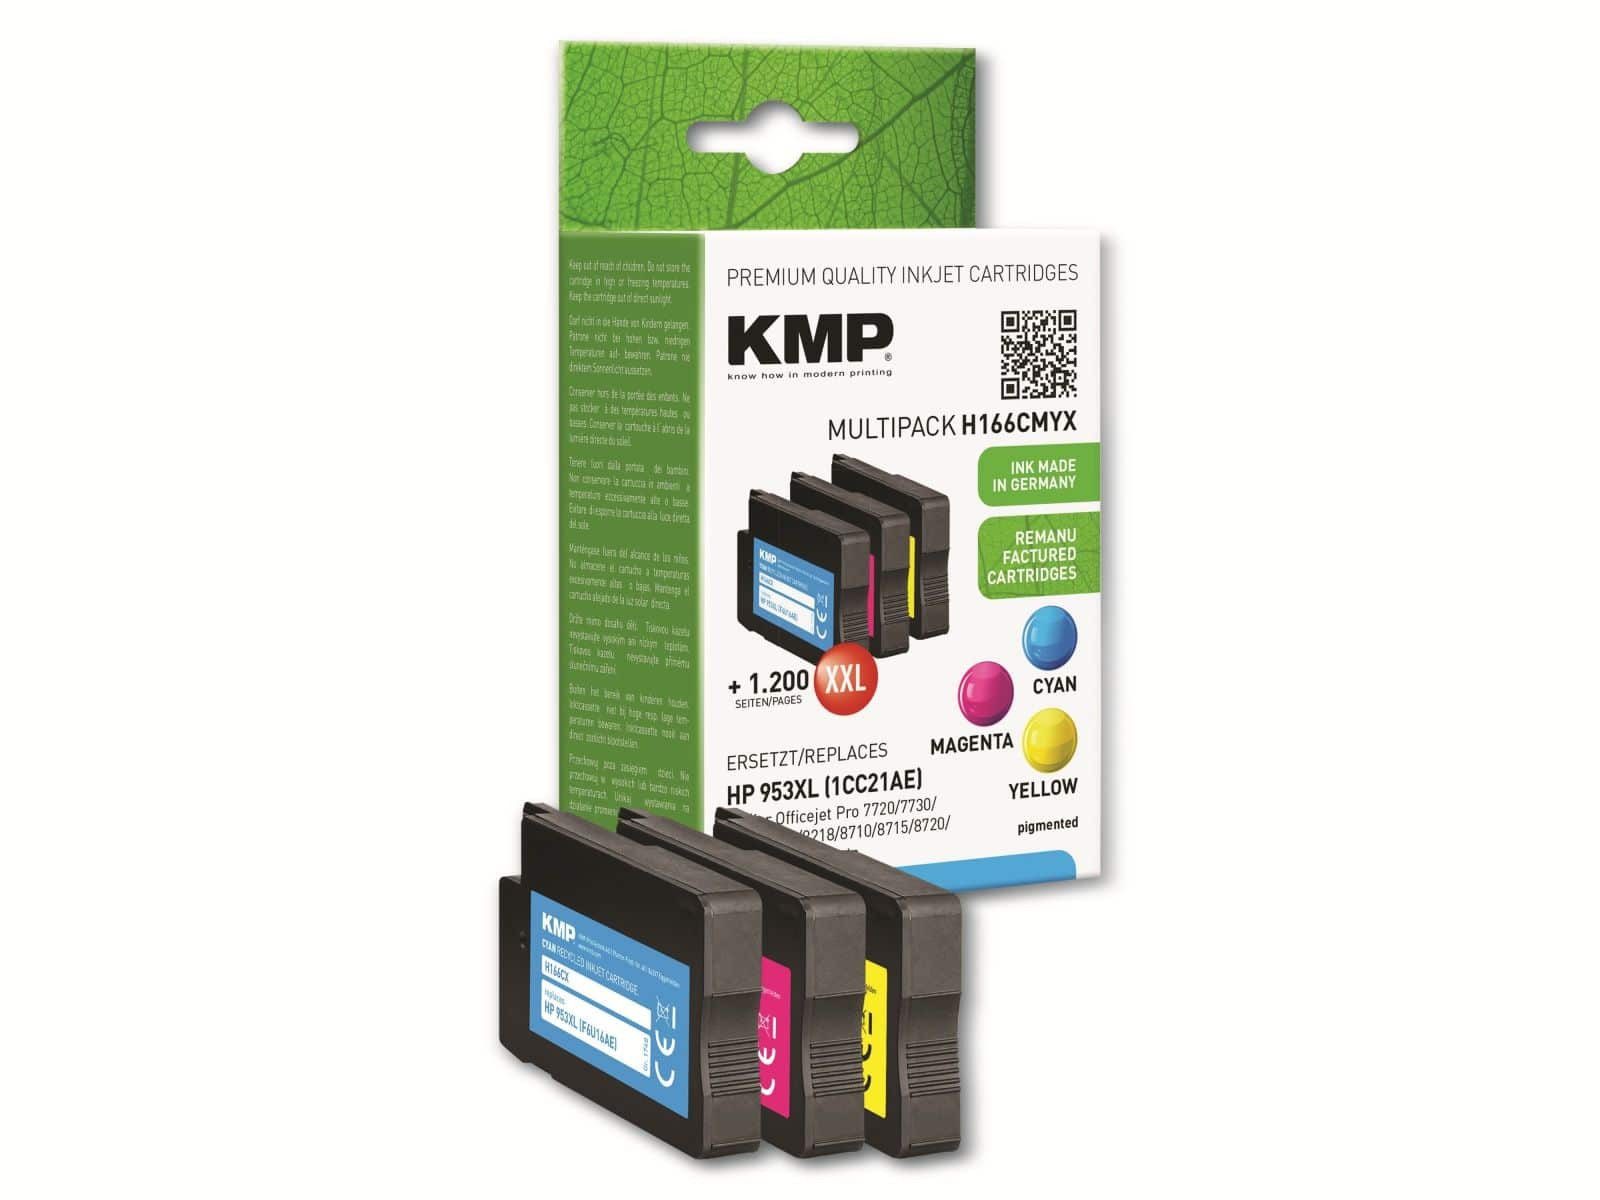 KMP KMP Tinten-Multipack H166CMYX, color Tintenpatrone